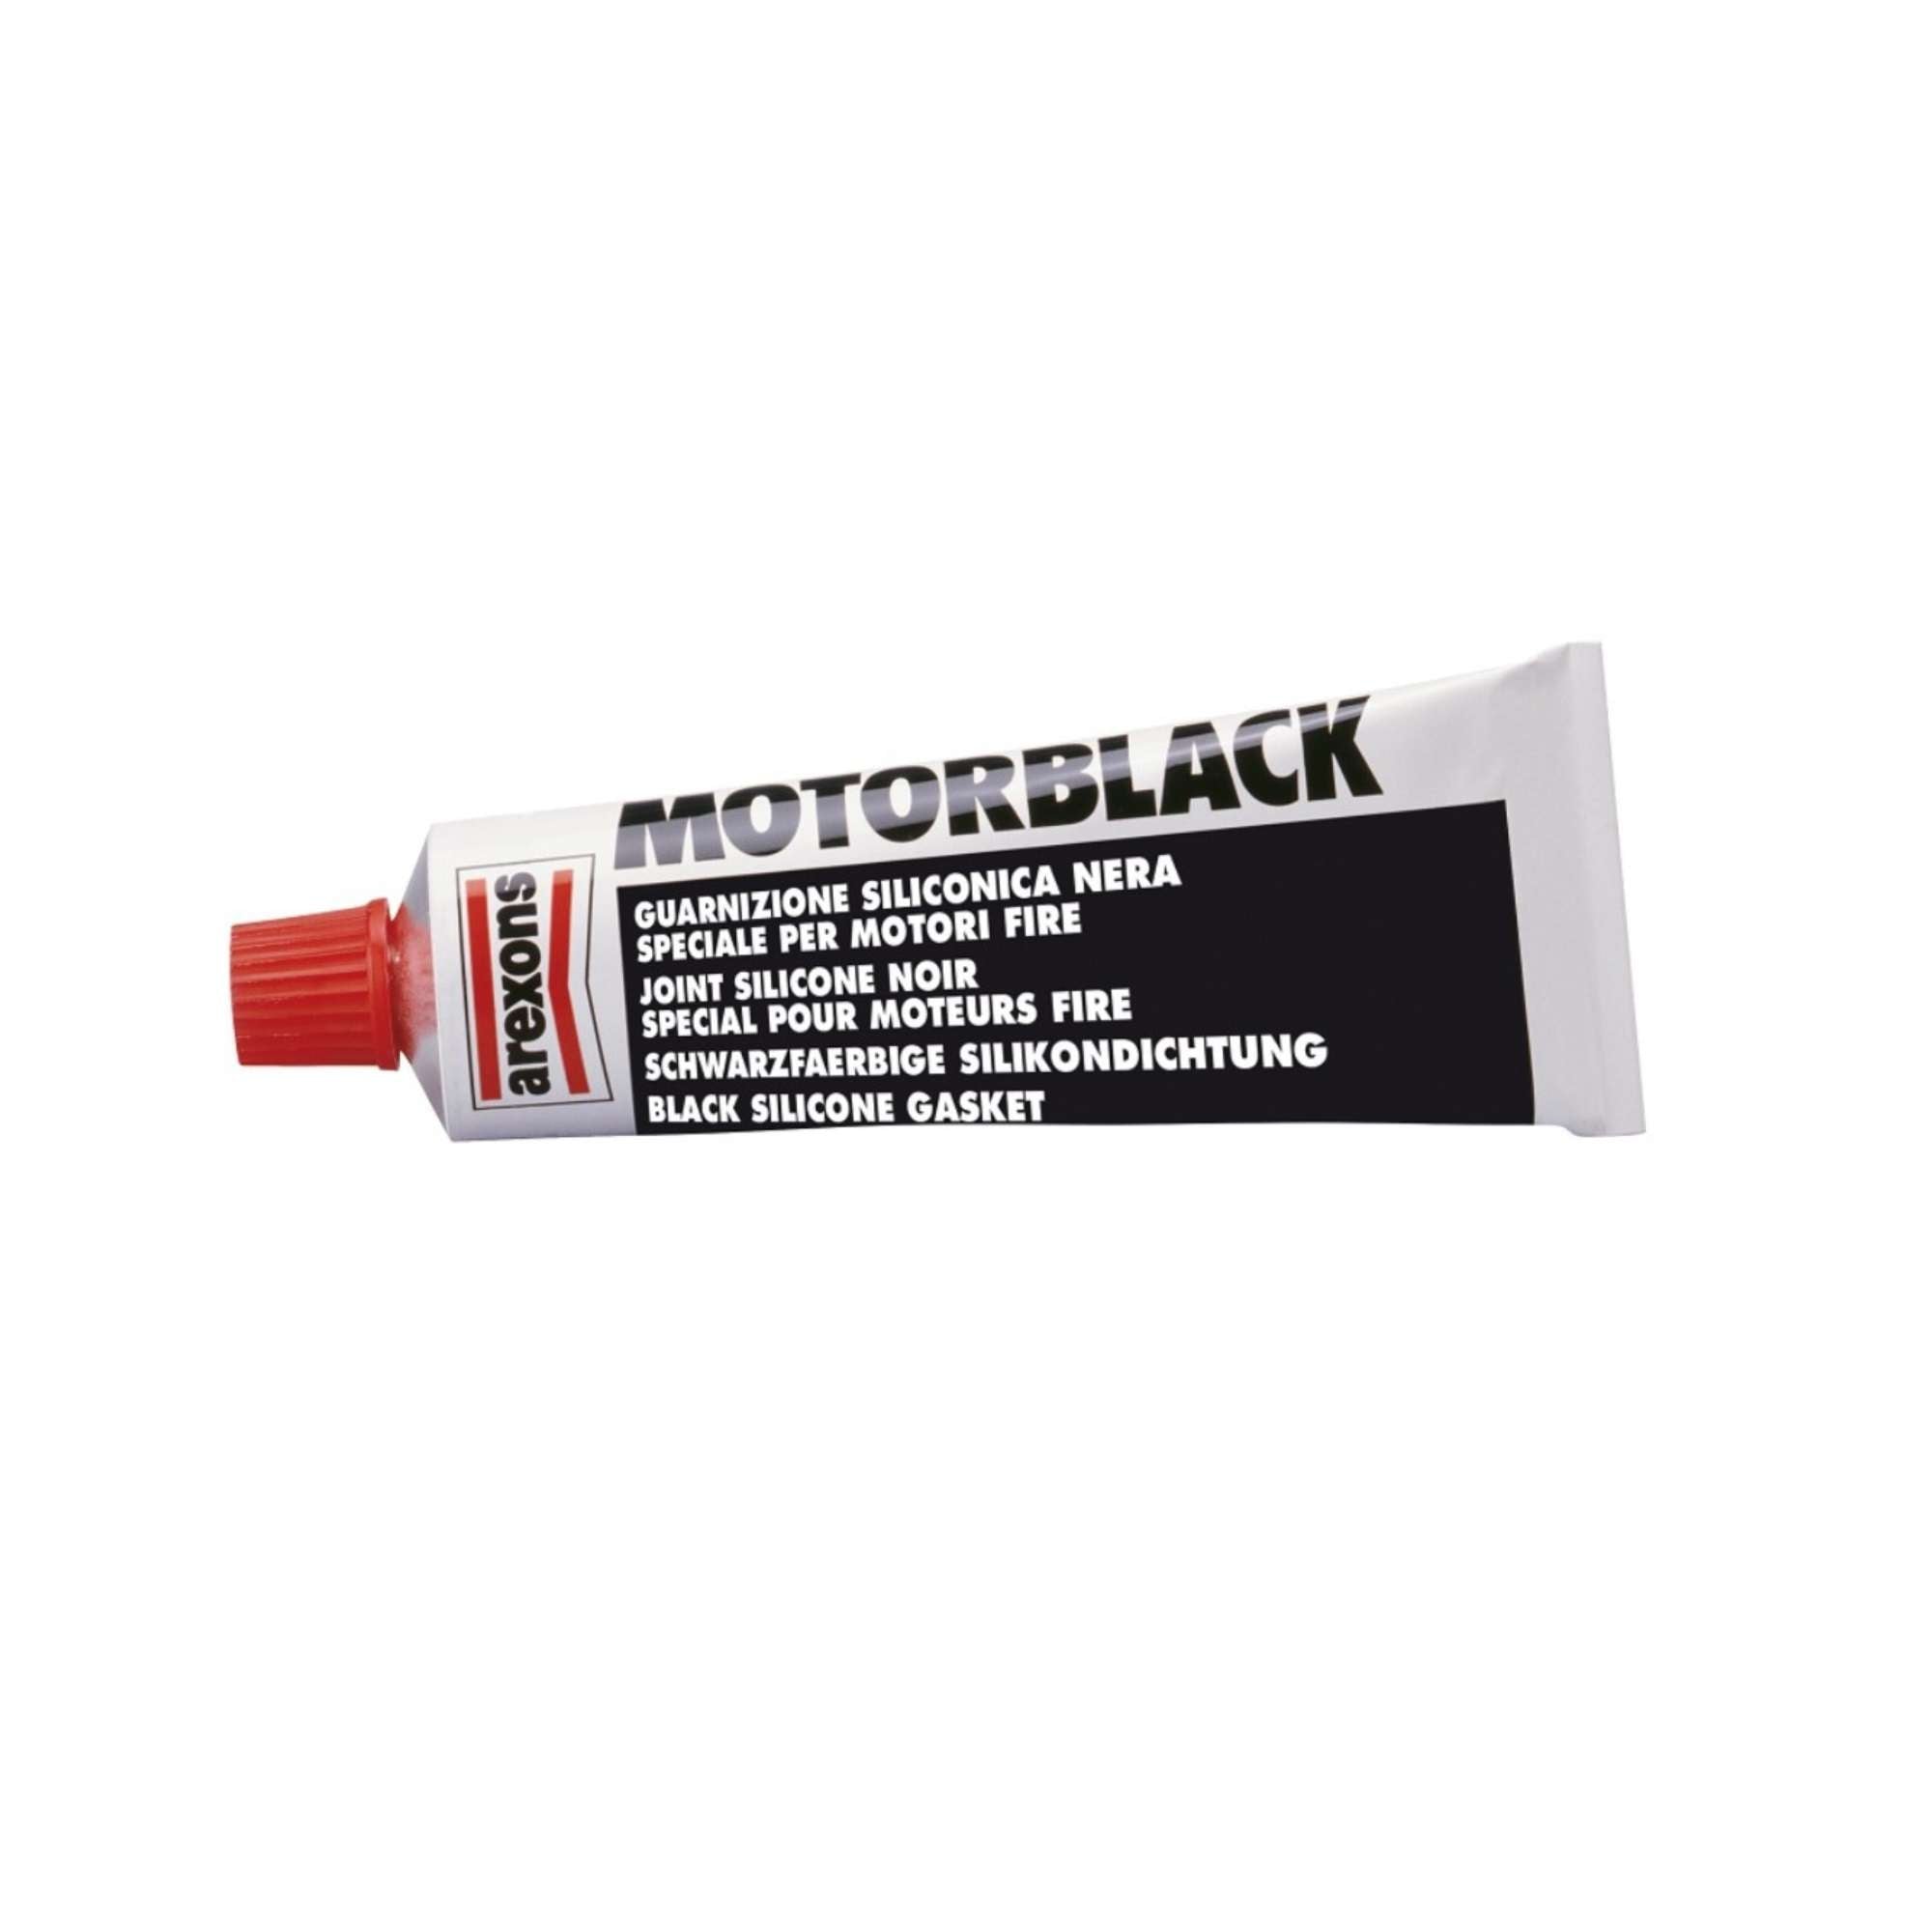 Guarnizione Motorblack siliconica nera speciale per motori fire - Arexons 0094